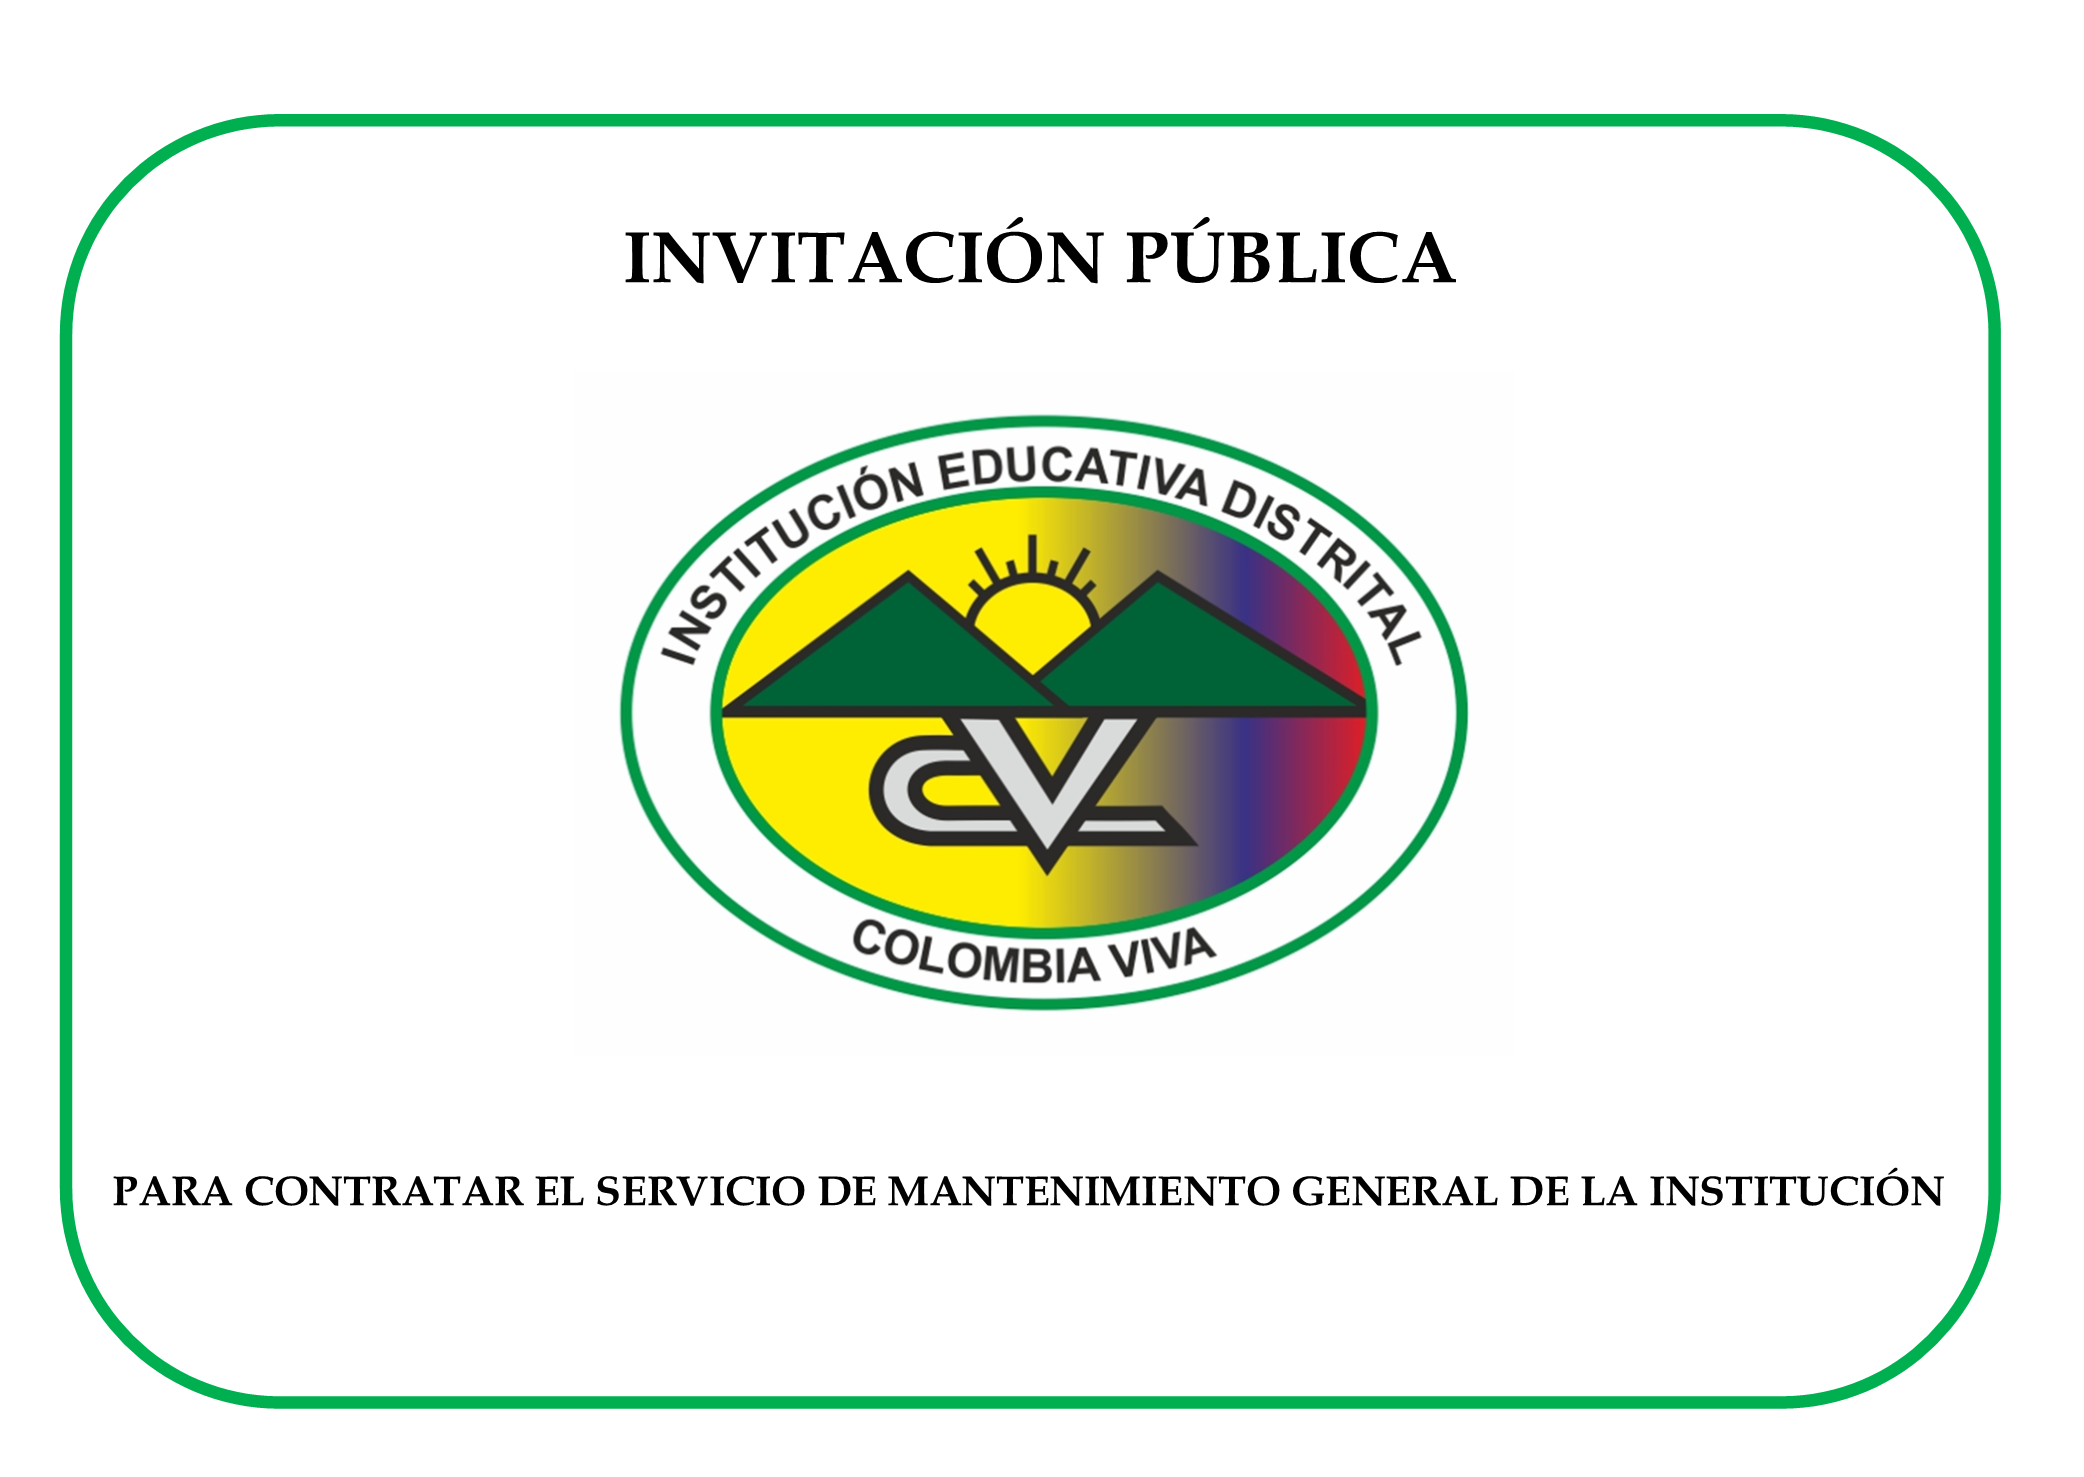 INVITACIÓN PÚBLICA PARA CONTRATAR EL SERVICIO DE MANTENIMIENTO GENERAL DE LA INSTITUCIÓN